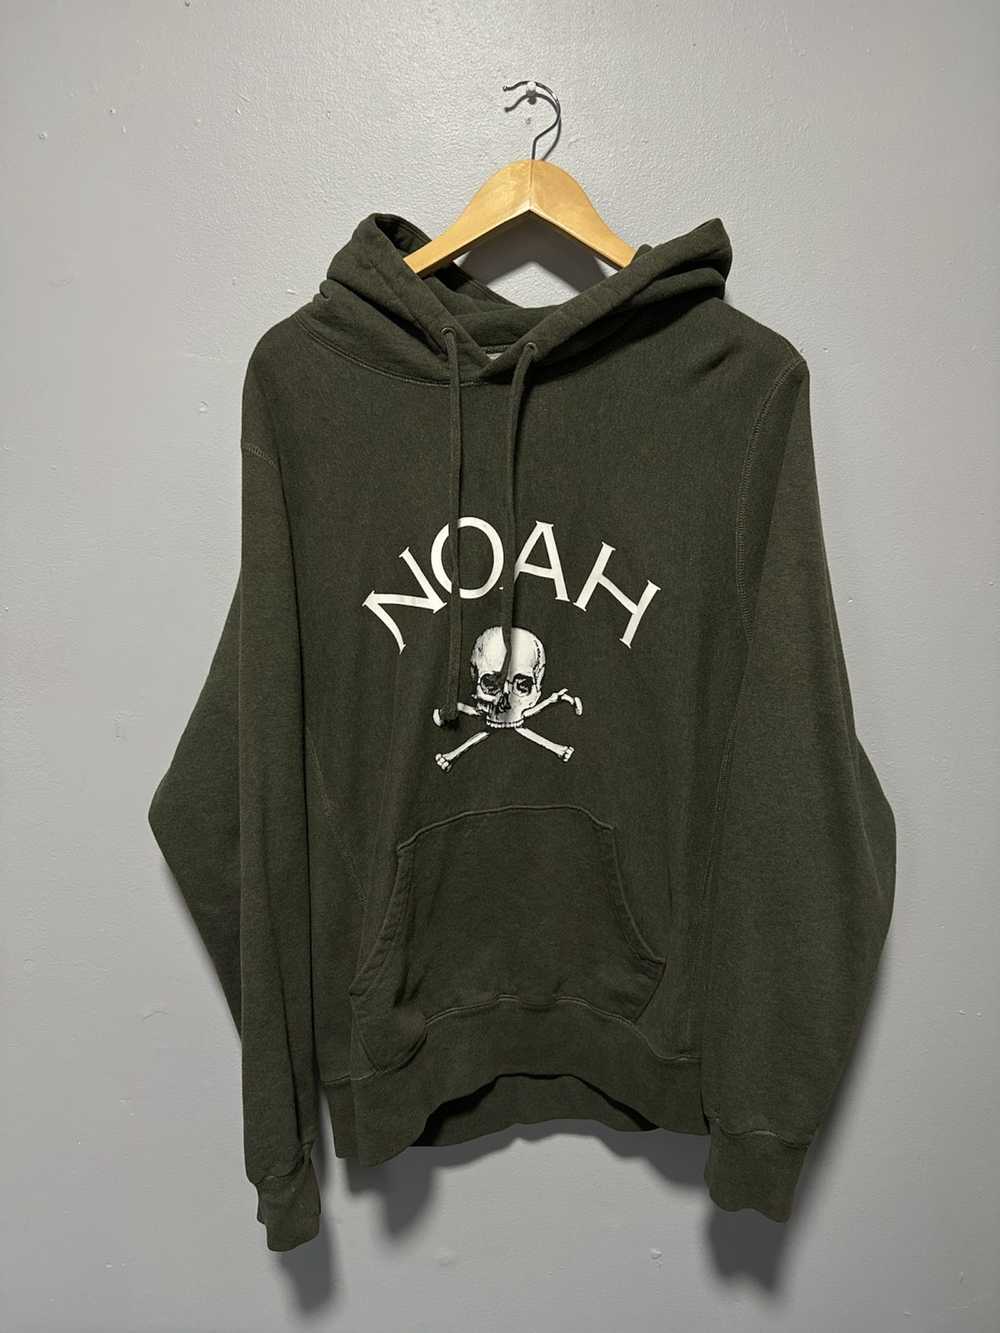 Noah Noah jolly roger hoodie - image 1